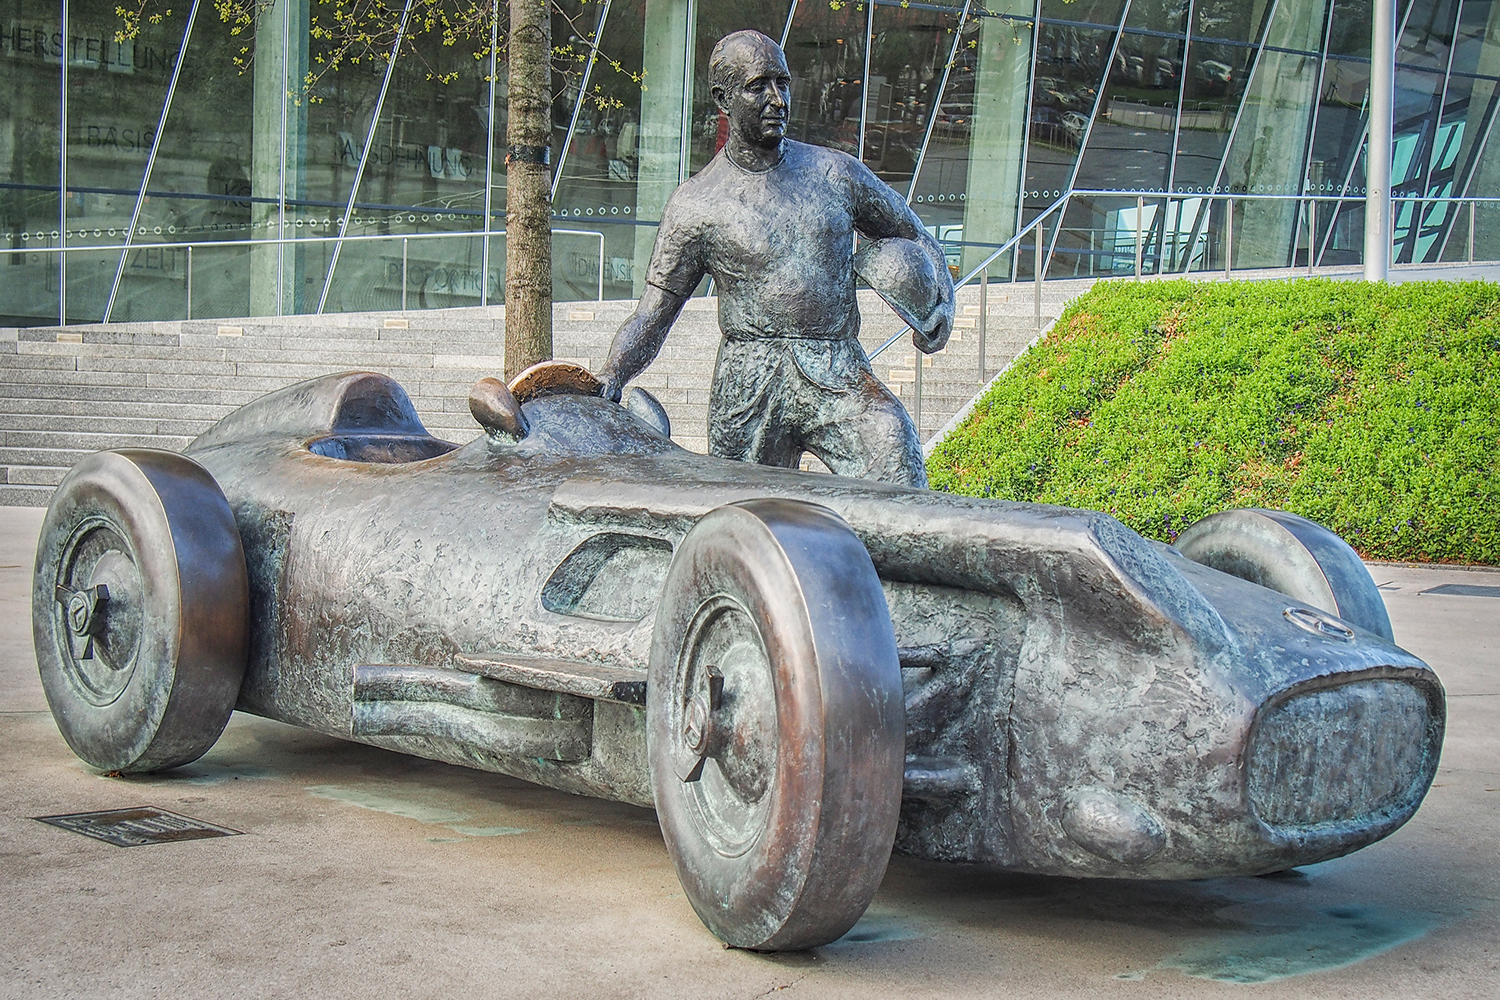 銅像になってもおかしくない日本の自動車産業の向上に偉大な貢献を果たしたクルマ